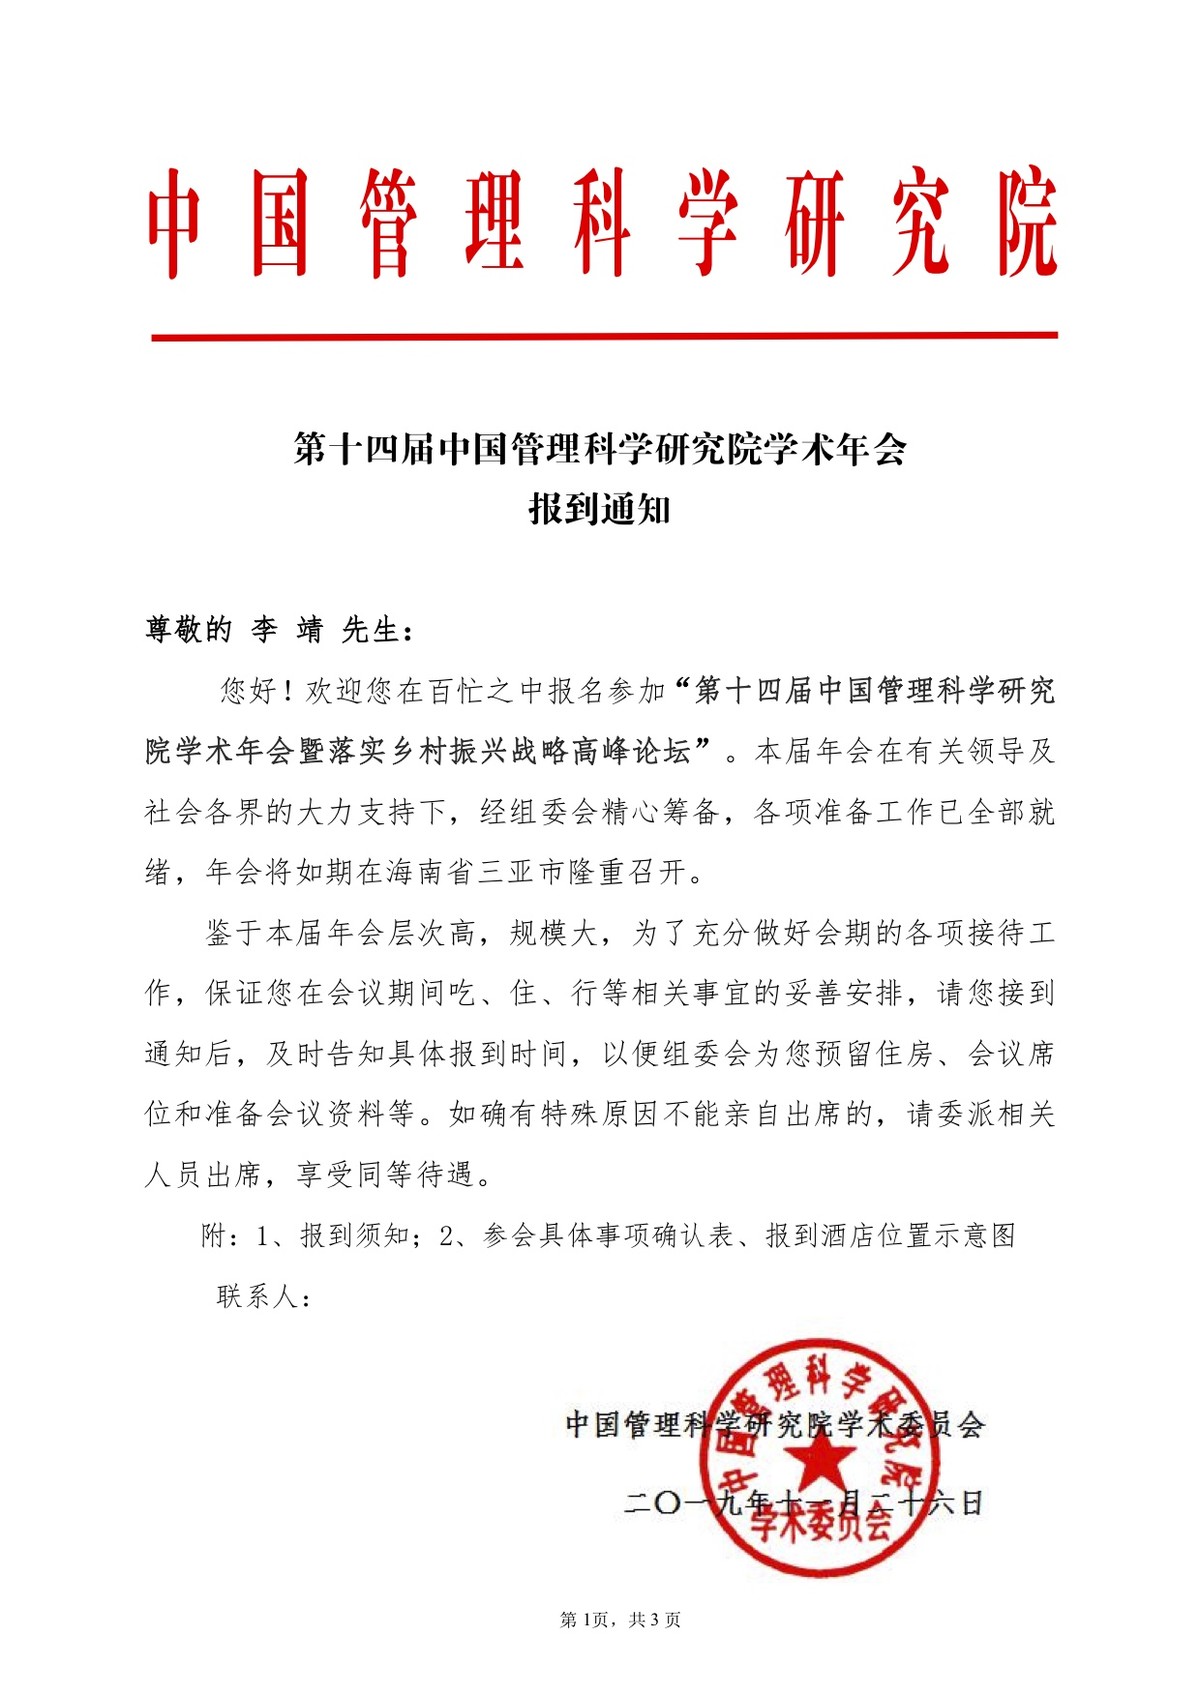 中国管理科学研究院邀请函 - 合智连横官方站chinaokr.cn